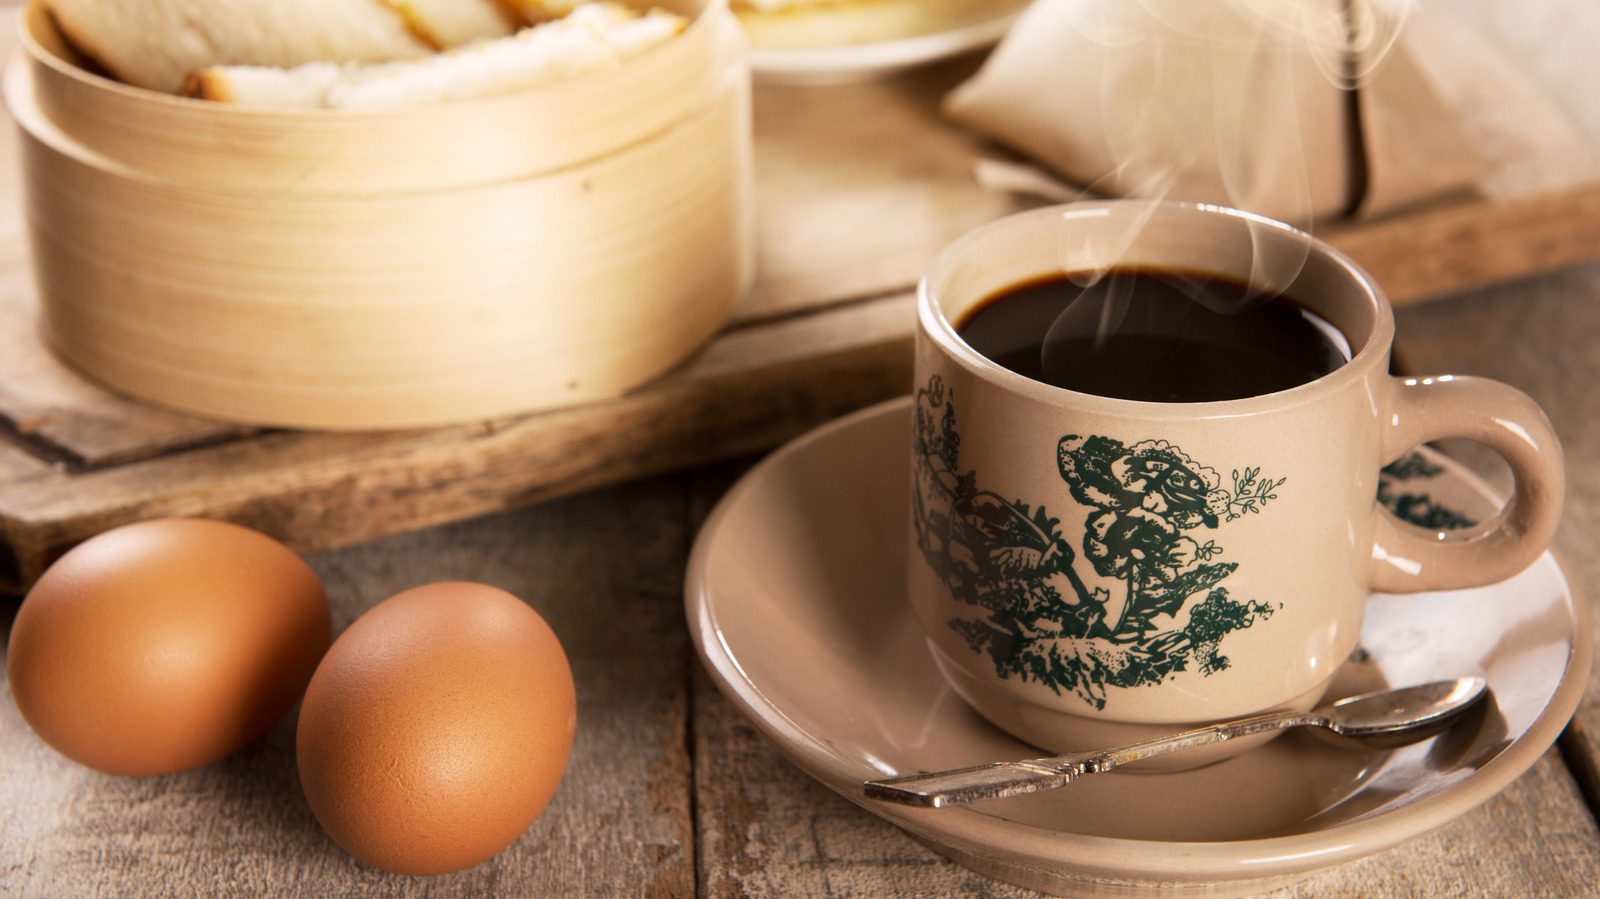 Cà phê trứng Thụy Điển, món cà phê trăm năm tuổi với cách pha chế lạ - Ảnh 1